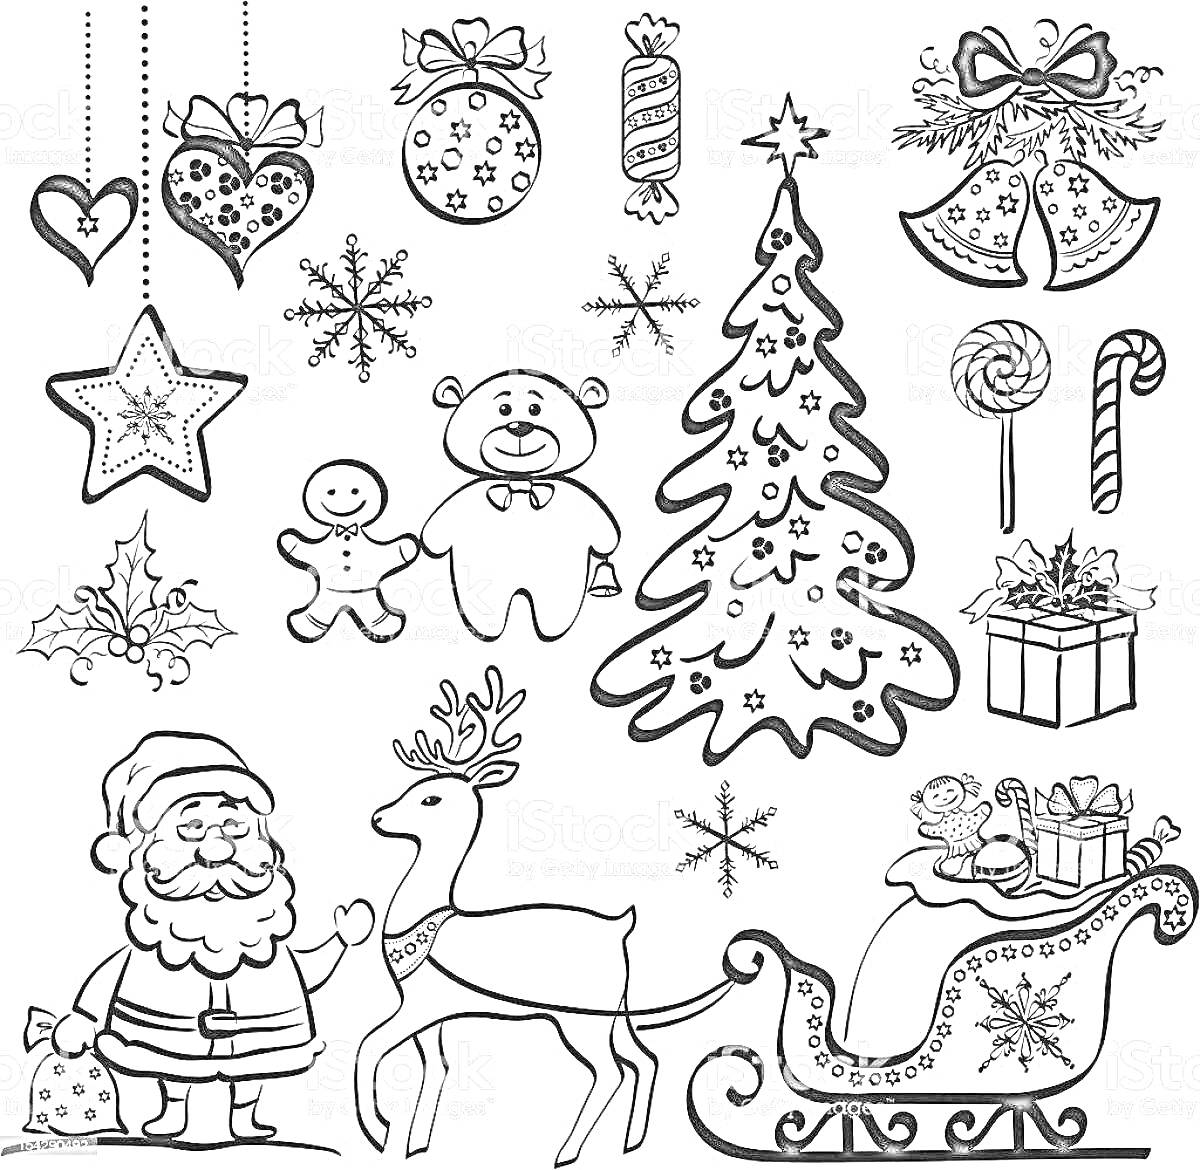 Раскраска Новогодние наклейки с елкой, подарками, Санта Клаусом, оленем, санями, снеговиком, конфетами, колокольчиками, елочными украшениями, пряничным человечком и медведем.